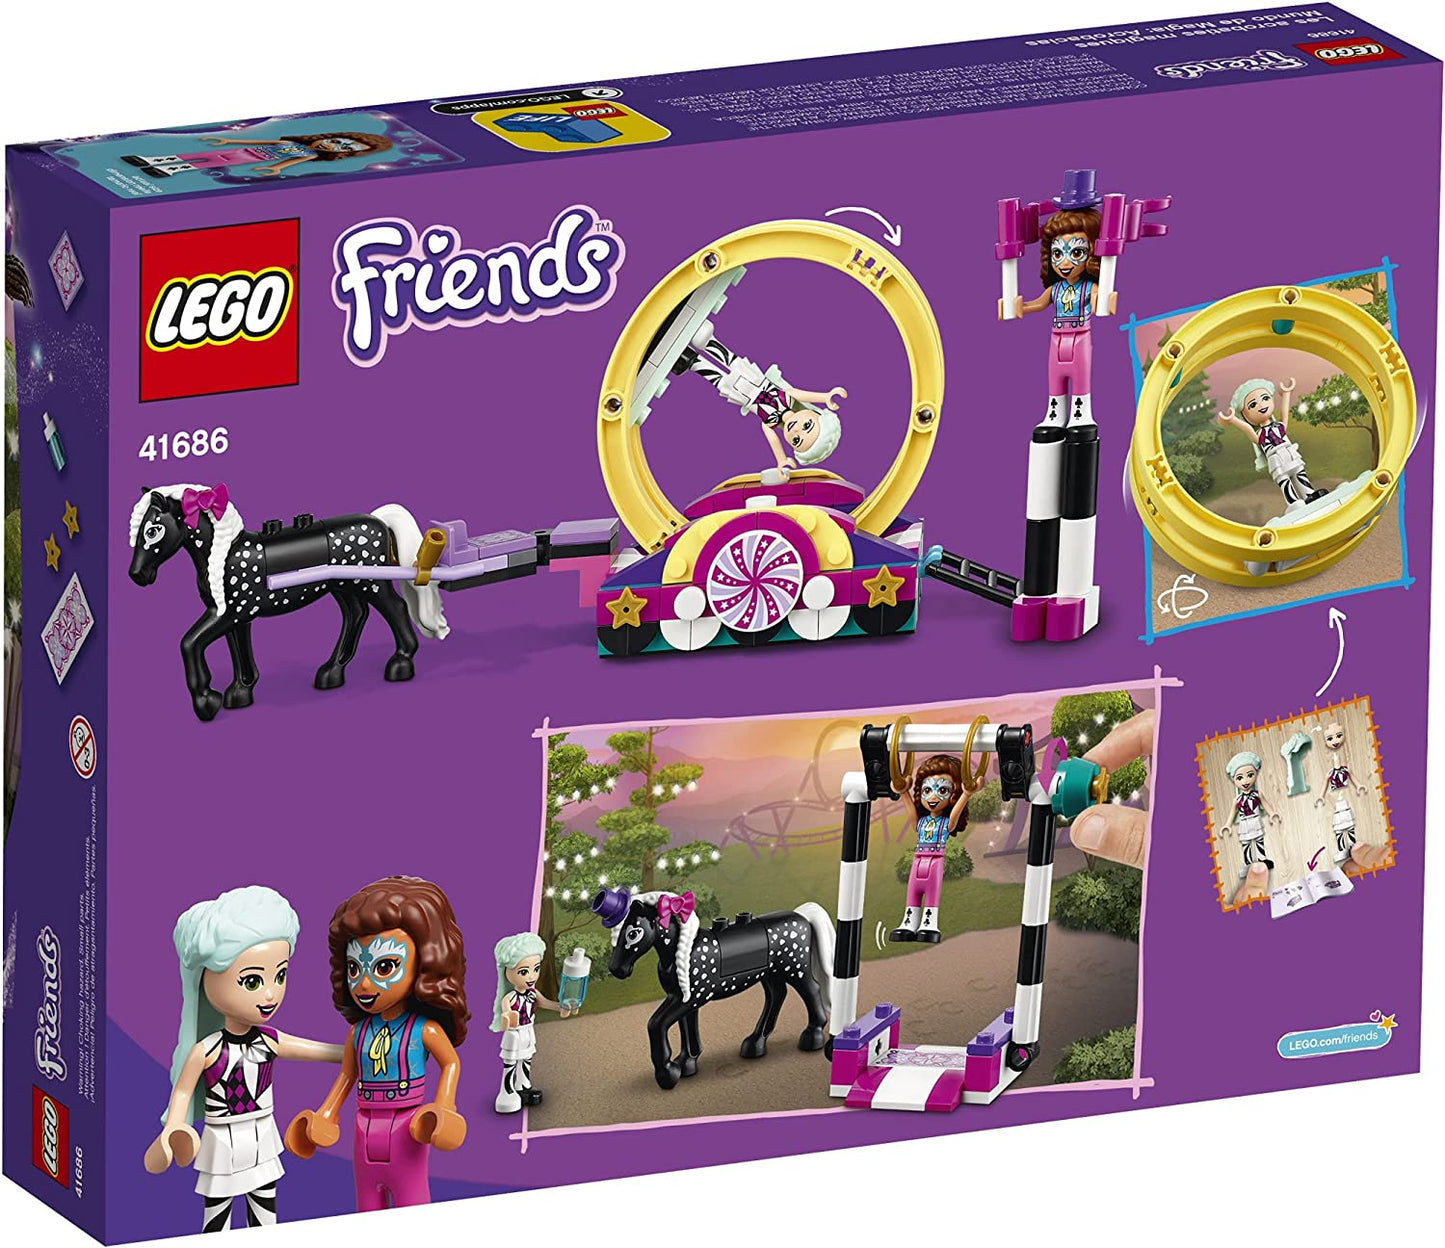 LEGO Friends - Magical Acrobatics 41686